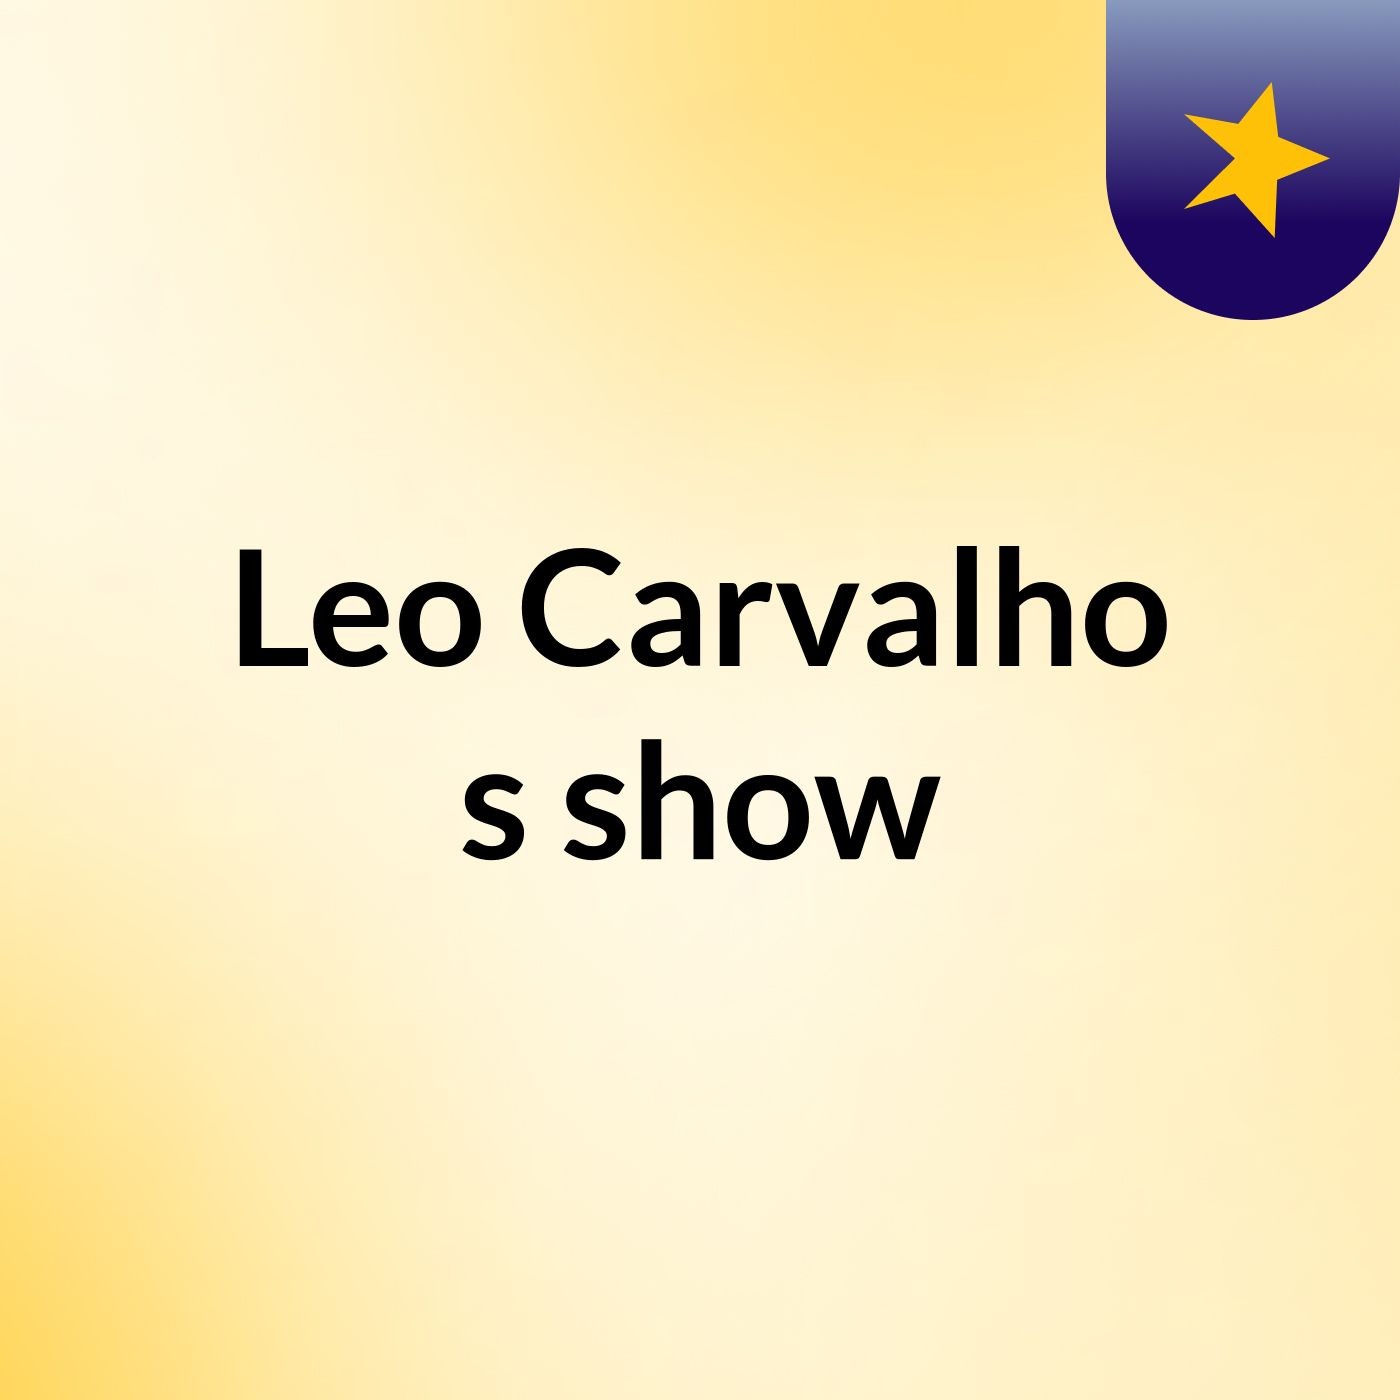 Leo Carvalho's show